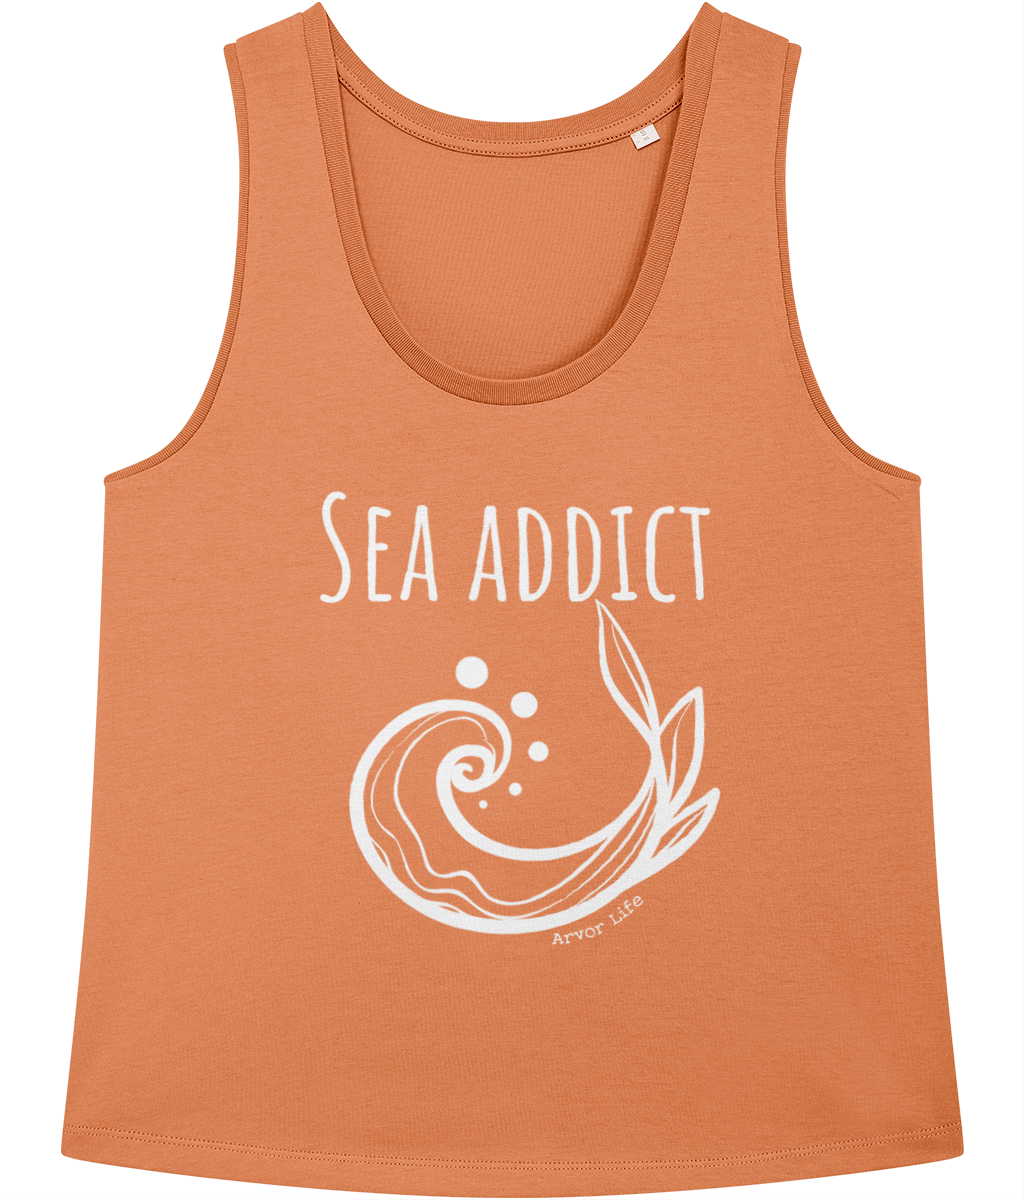 Sea Addict 100% Organic Cotton Vest Top